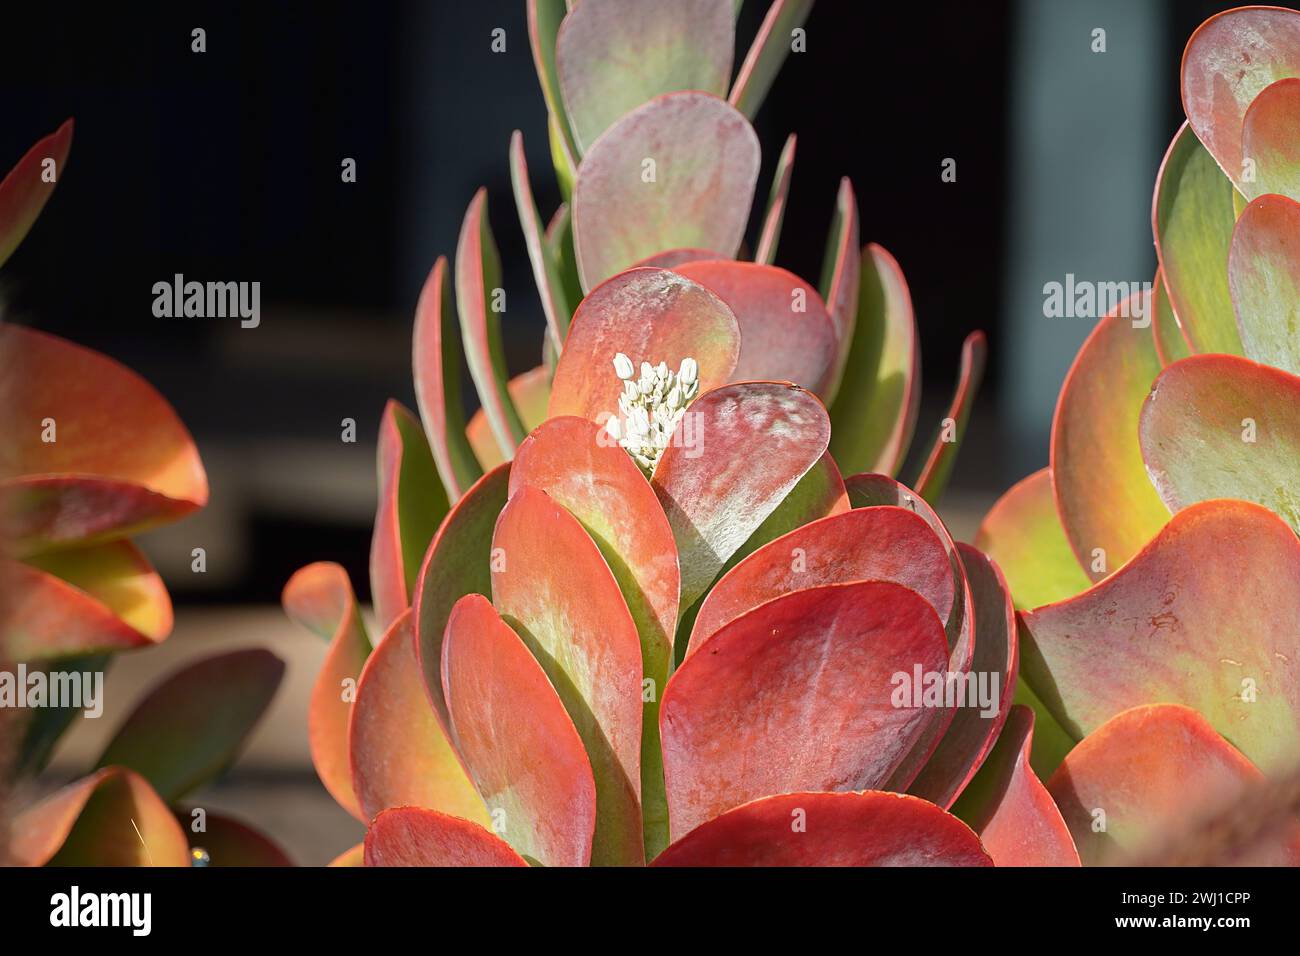 Paddelpflanzen oder Kalanchoe luciae, die ein Geschäft in Glyfada, Griechenland, dekorieren Stockfoto